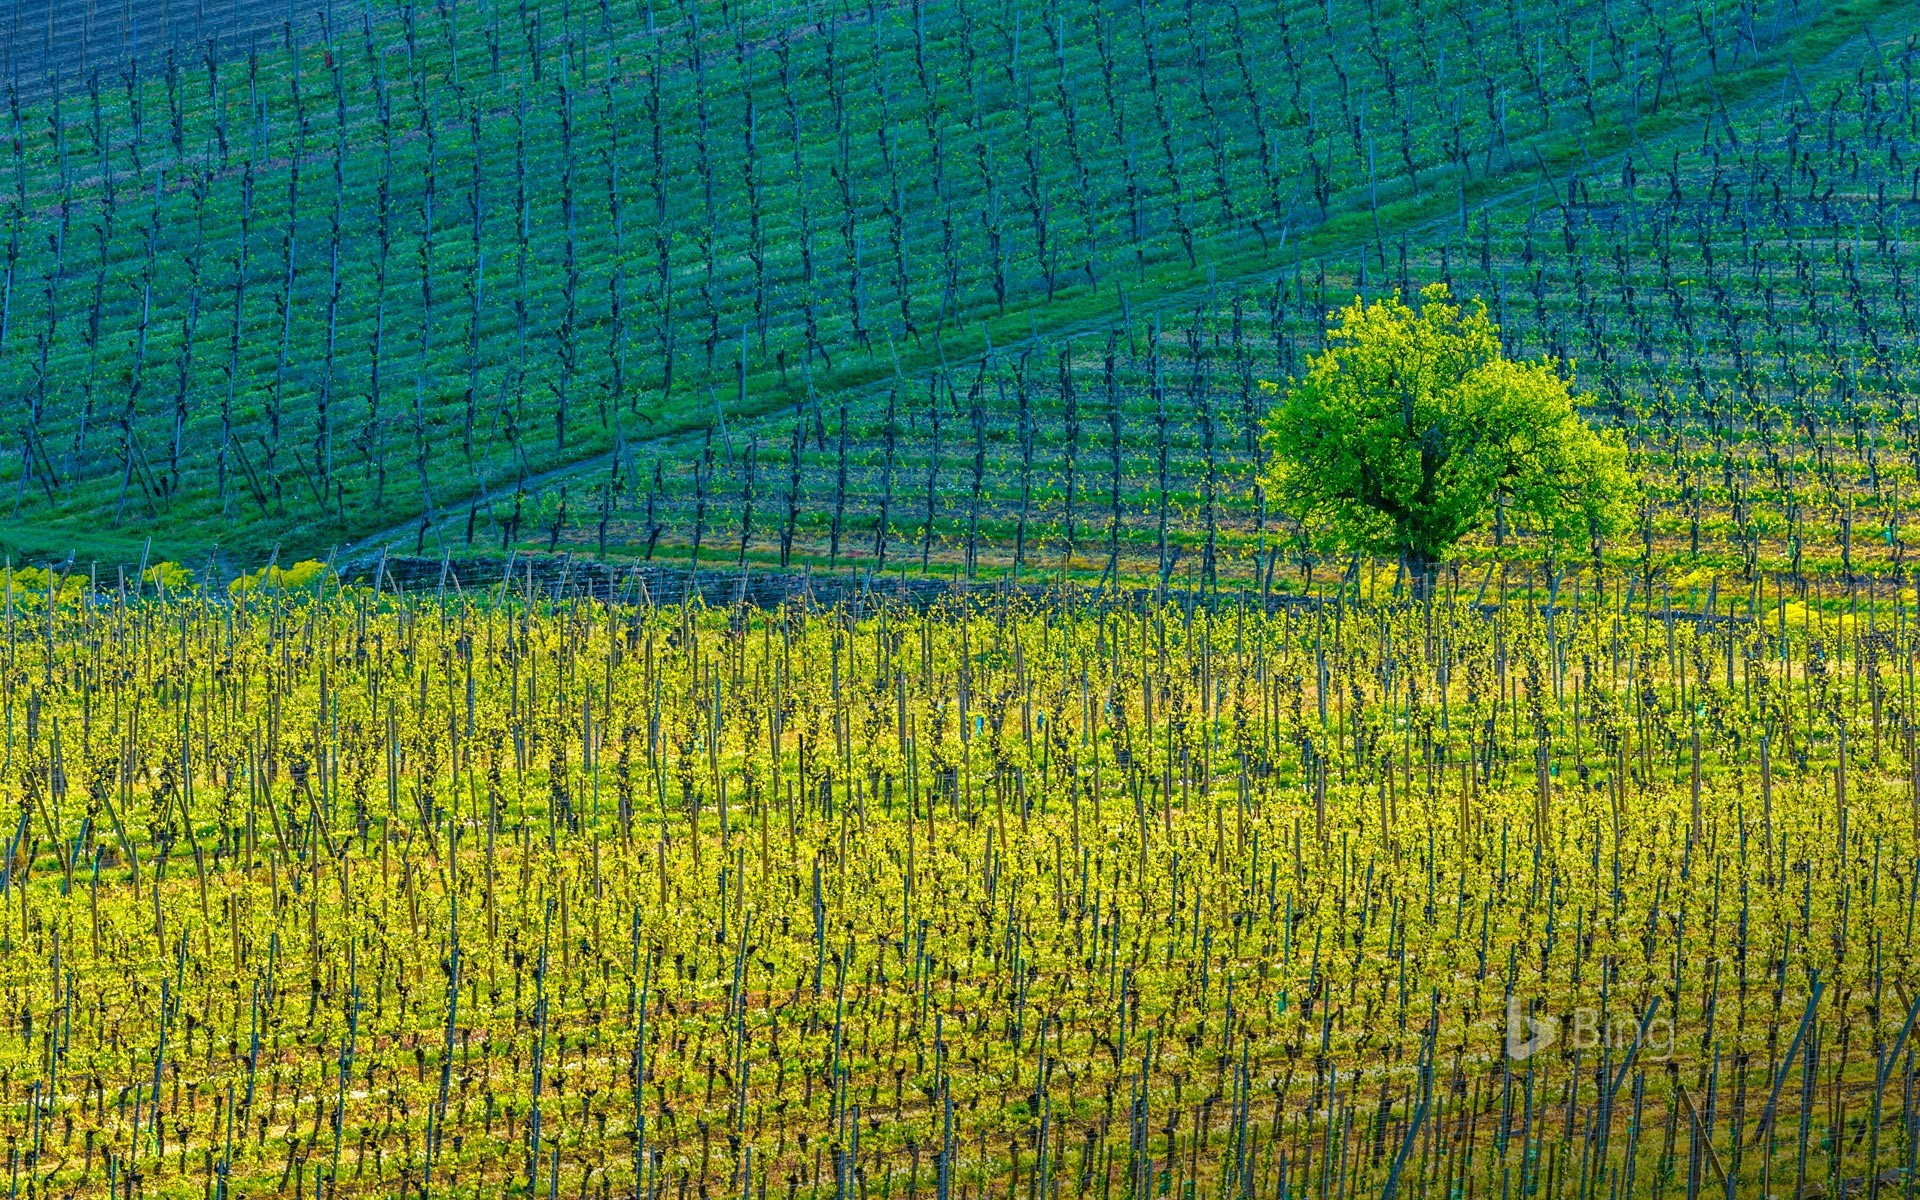 Vineyards around the town of Kientzheim, Haut-Rhin, Alsace, France